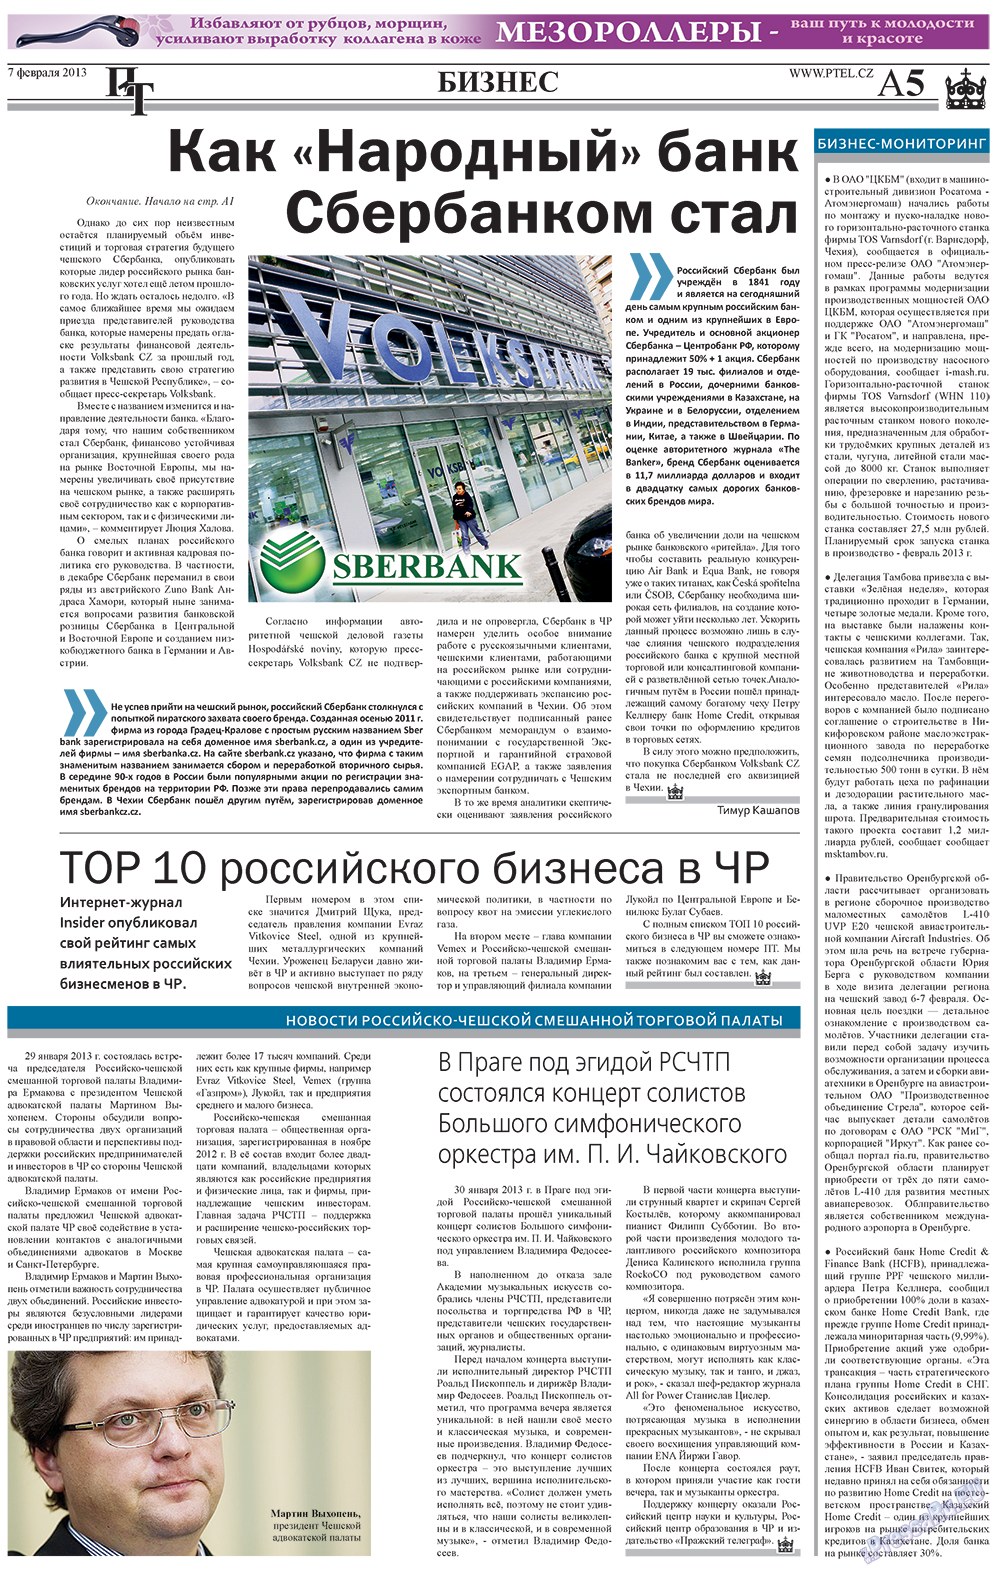 Пражский телеграф (газета). 2013 год, номер 5, стр. 5